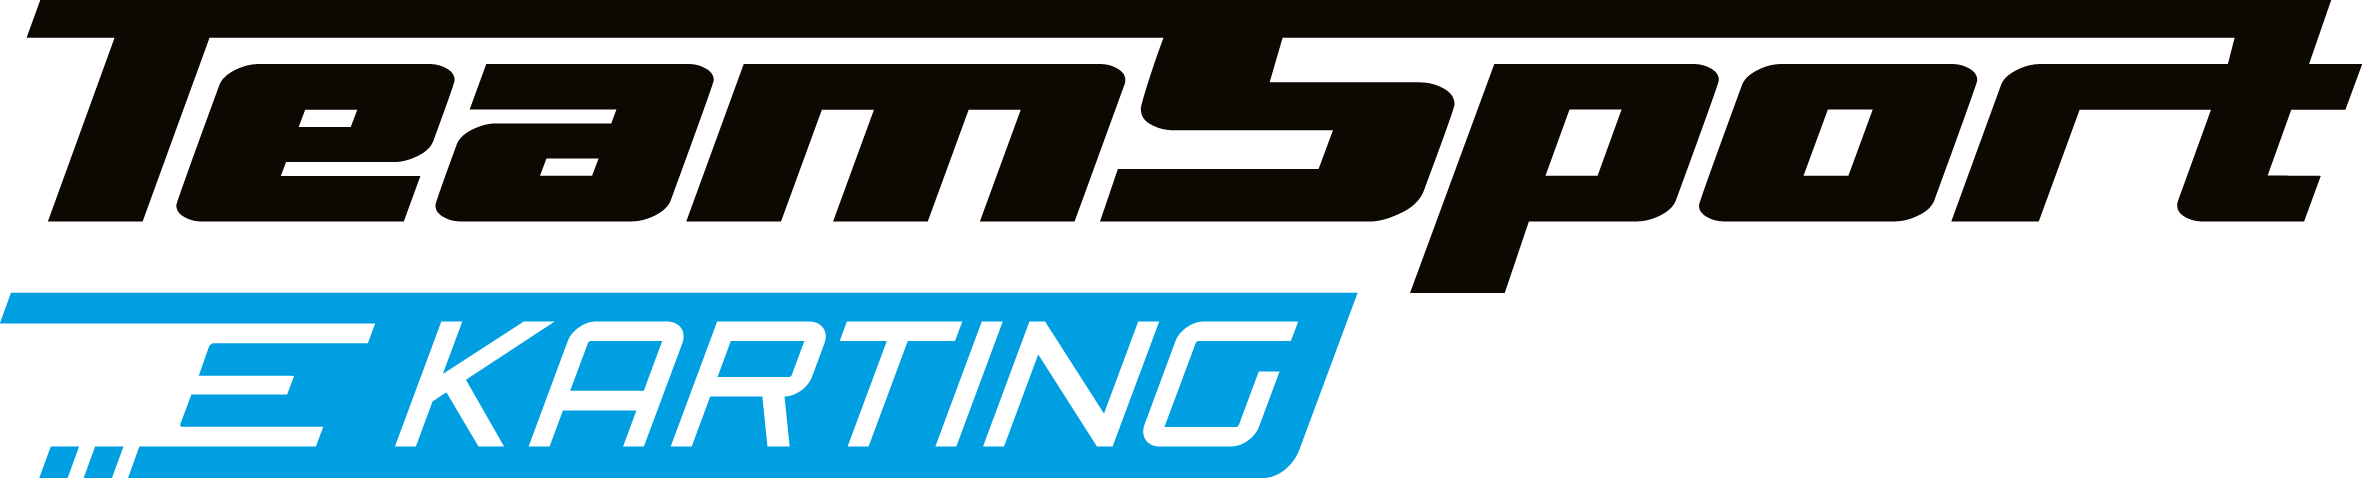 Teamsport e-karting logo - Wobbes Content Marketing